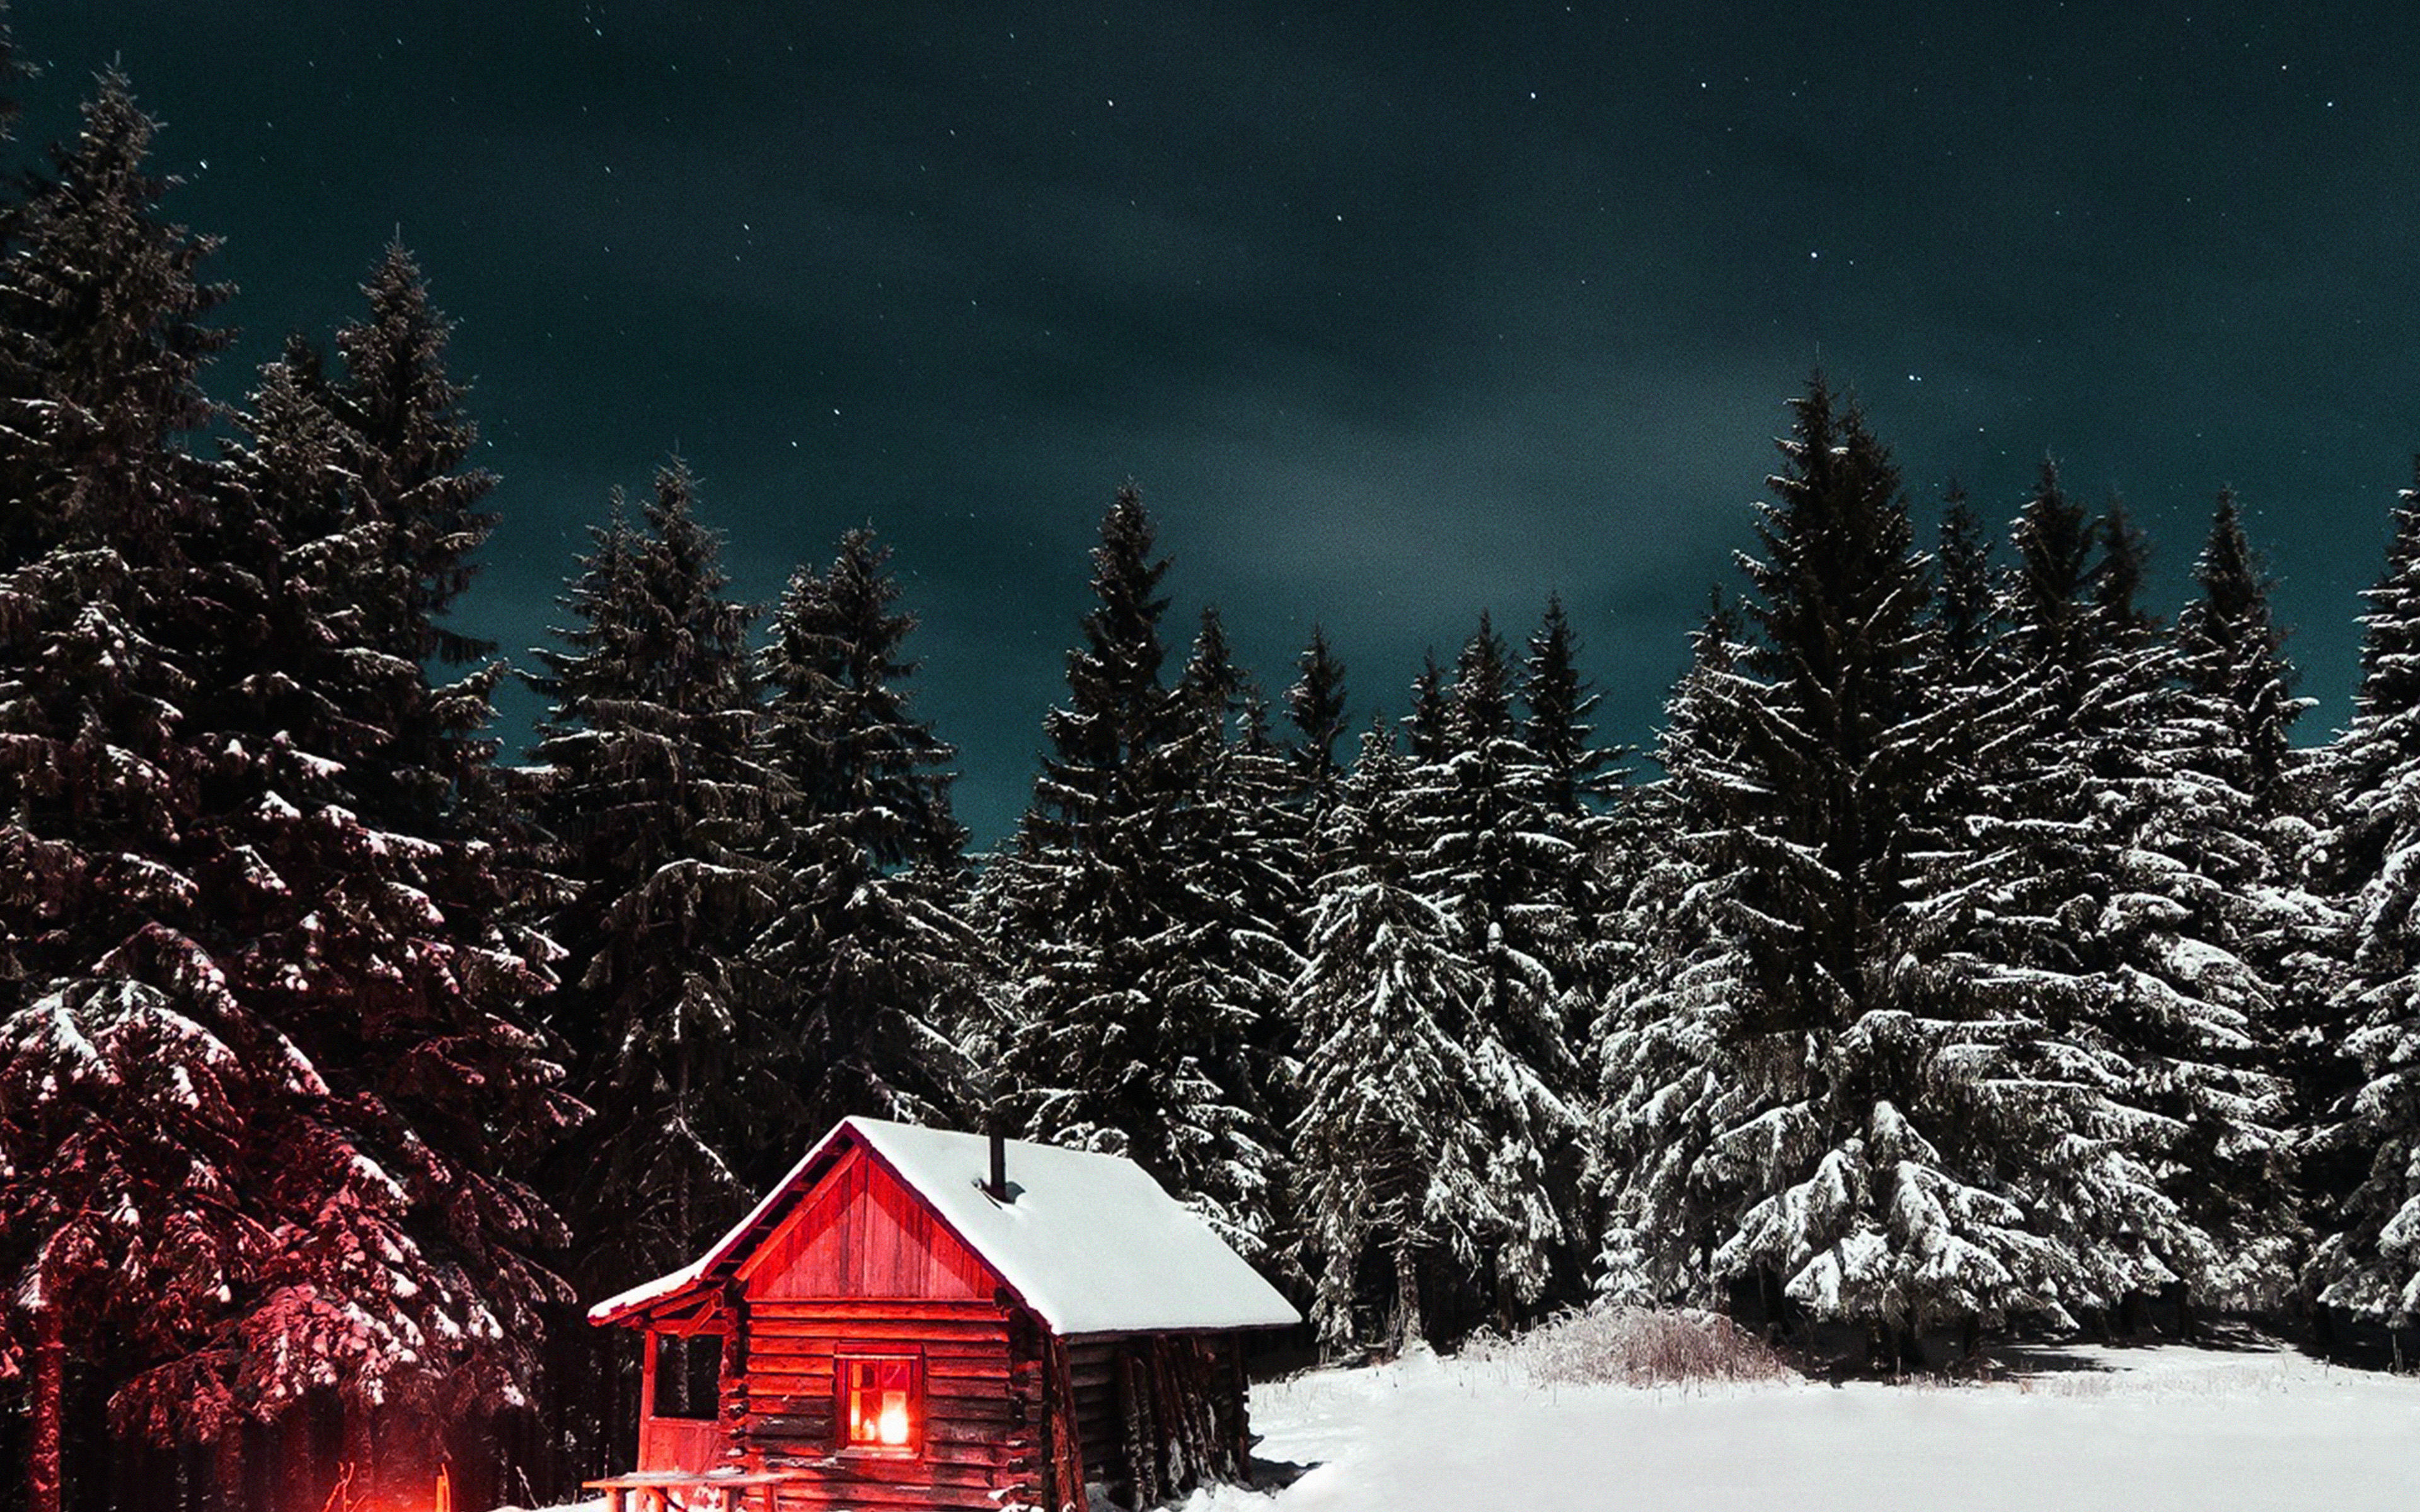 Winter House Night Sky Christmas